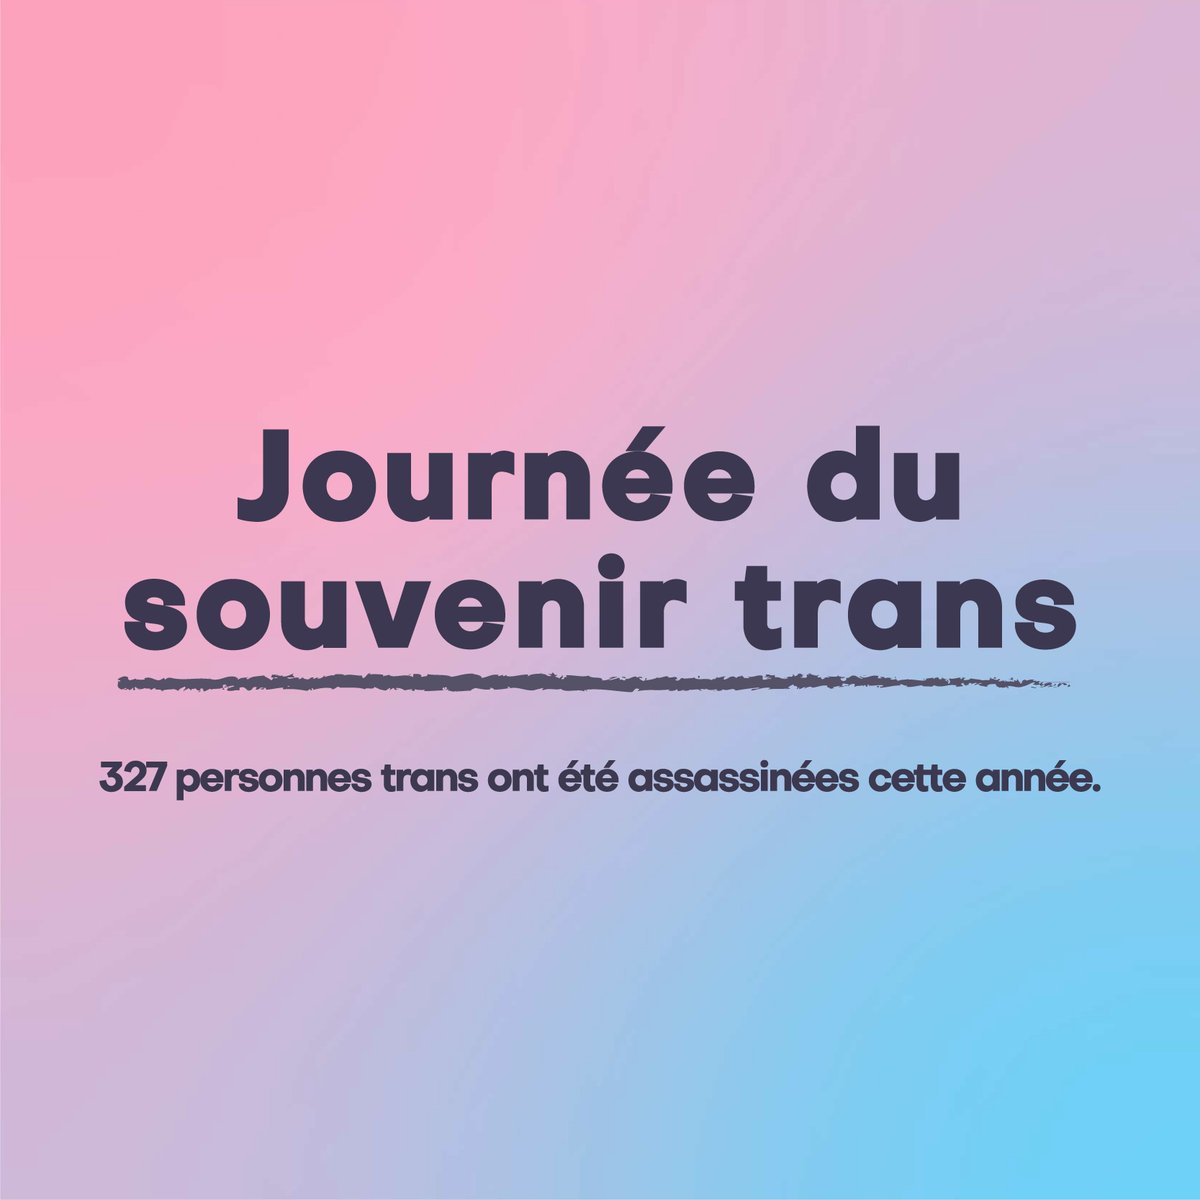 95% de ces victimes étaient des femmes trans.
48% étaient des travailleur·ses du sexe.
65% étaient des personnes racisées.
36% des victimes européennes étaient des personnes migrant·es.

Fais tourner ces chiffres. #TDOR #TDOR2022

Source : @TransRespect